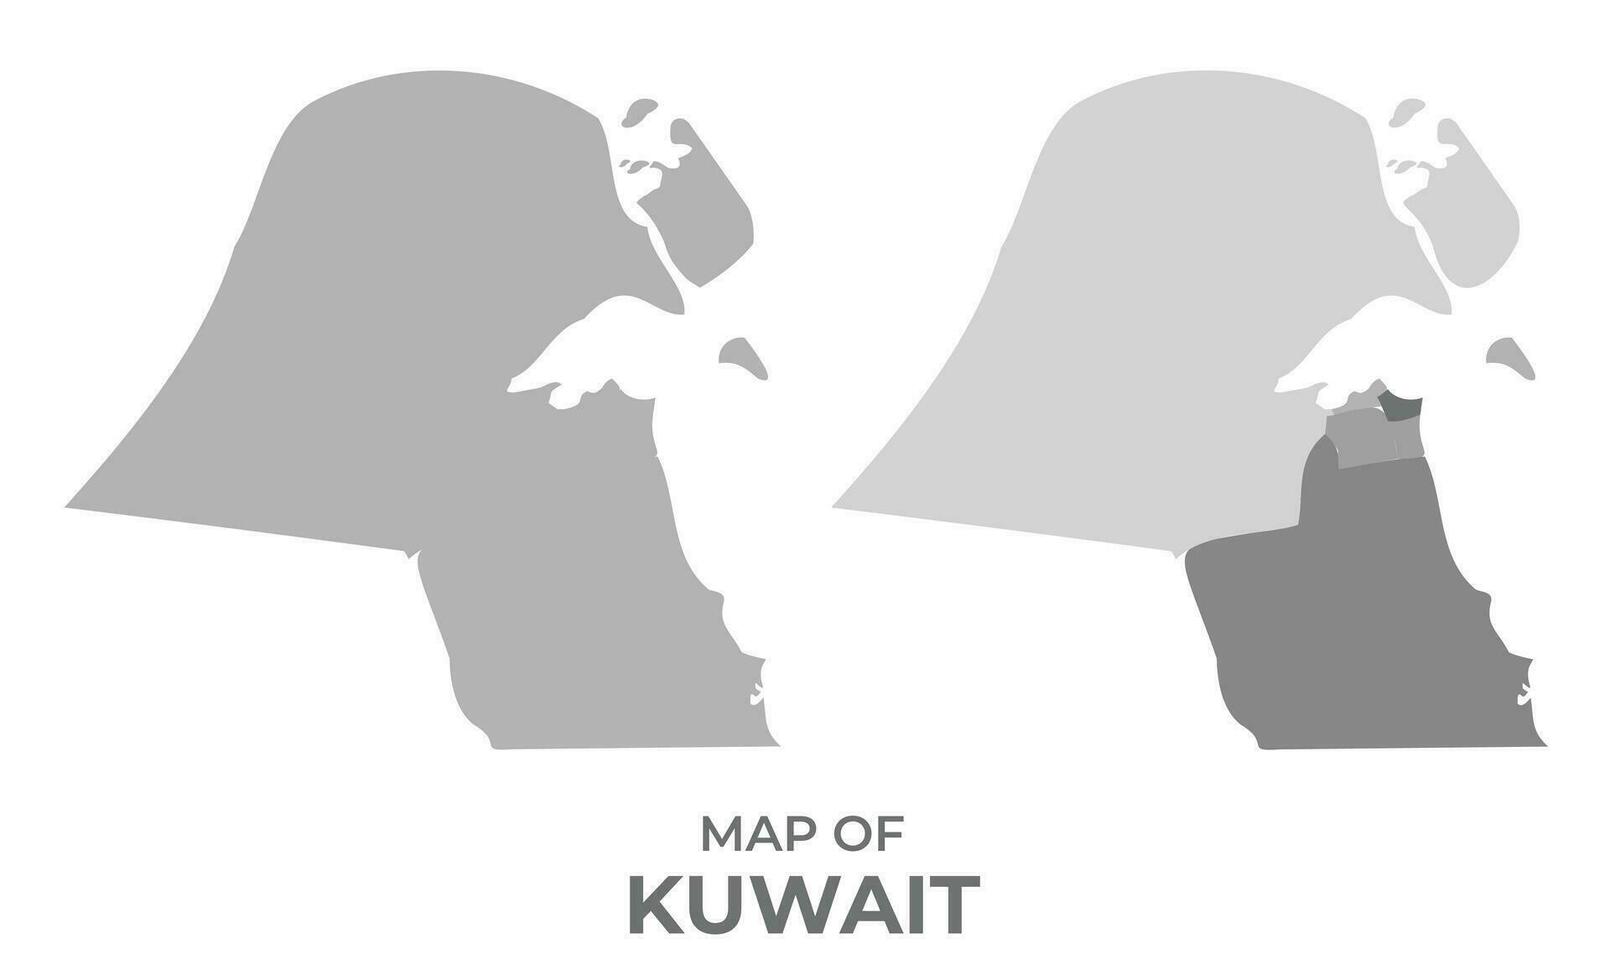 Graustufen Vektor Karte von Kuwait mit Regionen und einfach eben Illustration